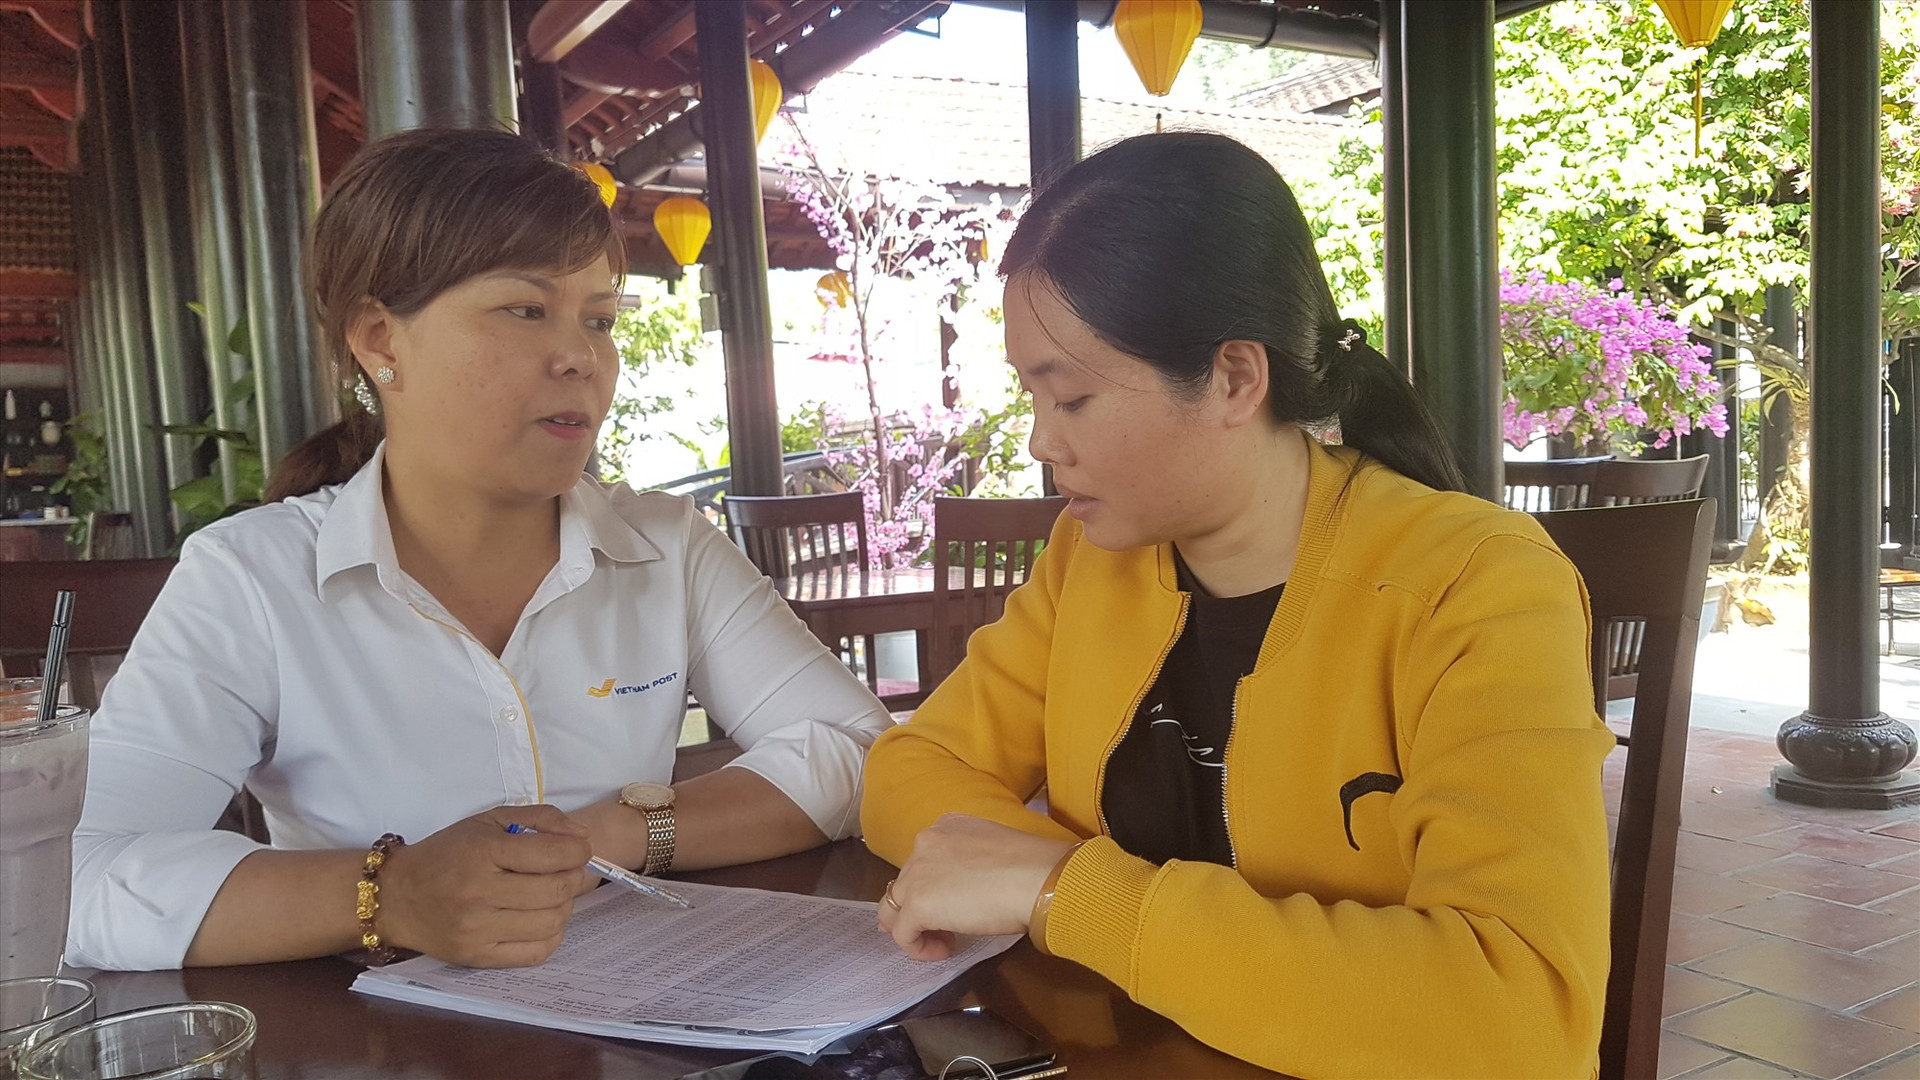 Chị Nguyễn Thị Quỳnh Thu (bìa phải) đã tham gia chính sách BHXH tự nguyện sau khi hiểu rõ về chính sách từ sự tuyên truyền của đại lý thu Bưu điện. Ảnh: D.L